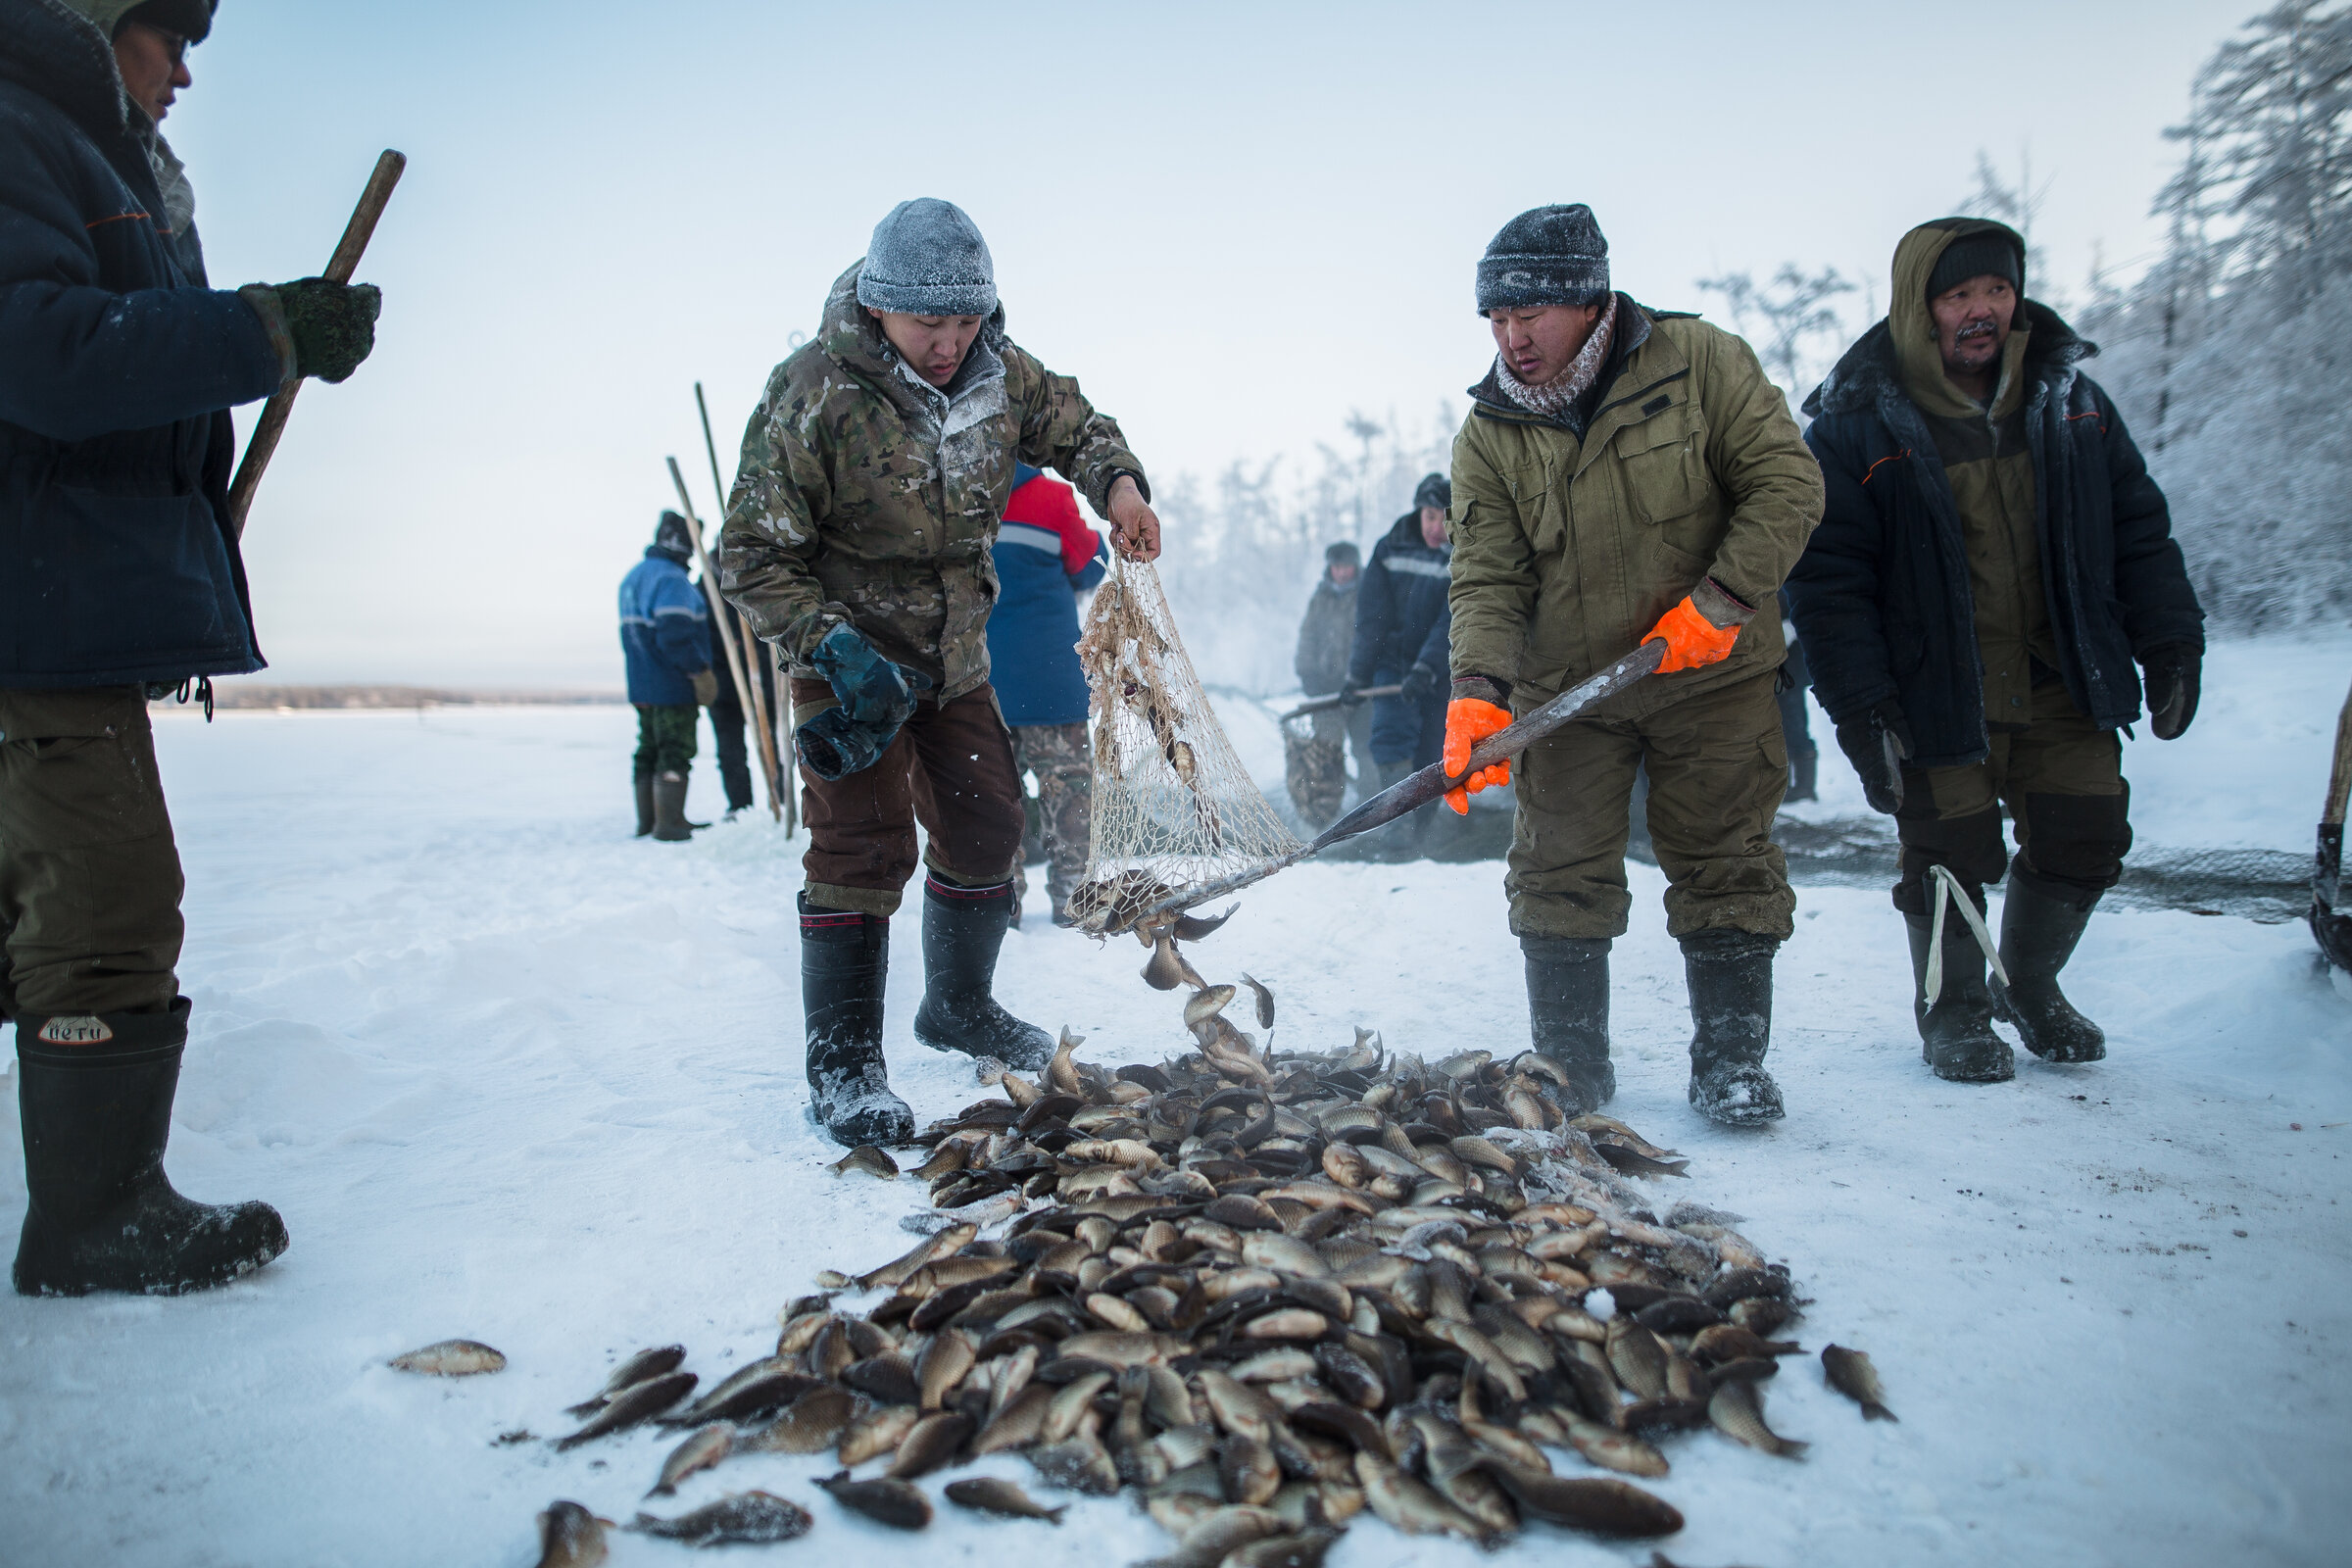 Как добывают рыбу зимой в глухой Сибири на реке Обь - всё официально, не браконьерство